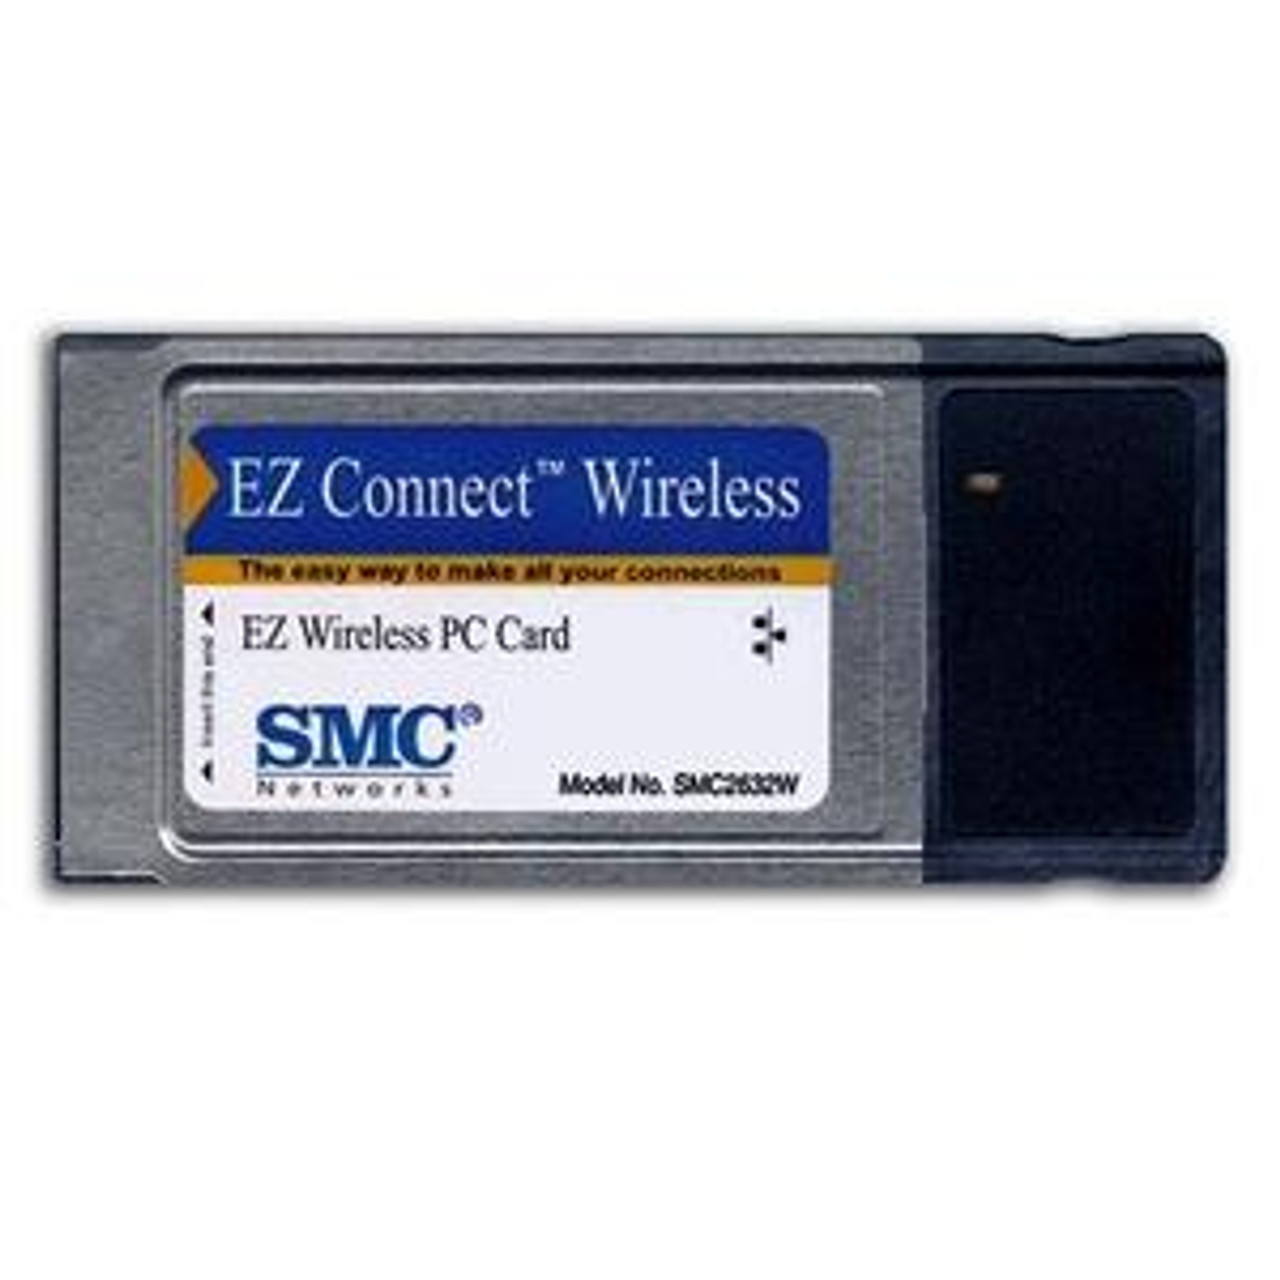 SMC2632W SMC 11MBps Wireless Pc Card